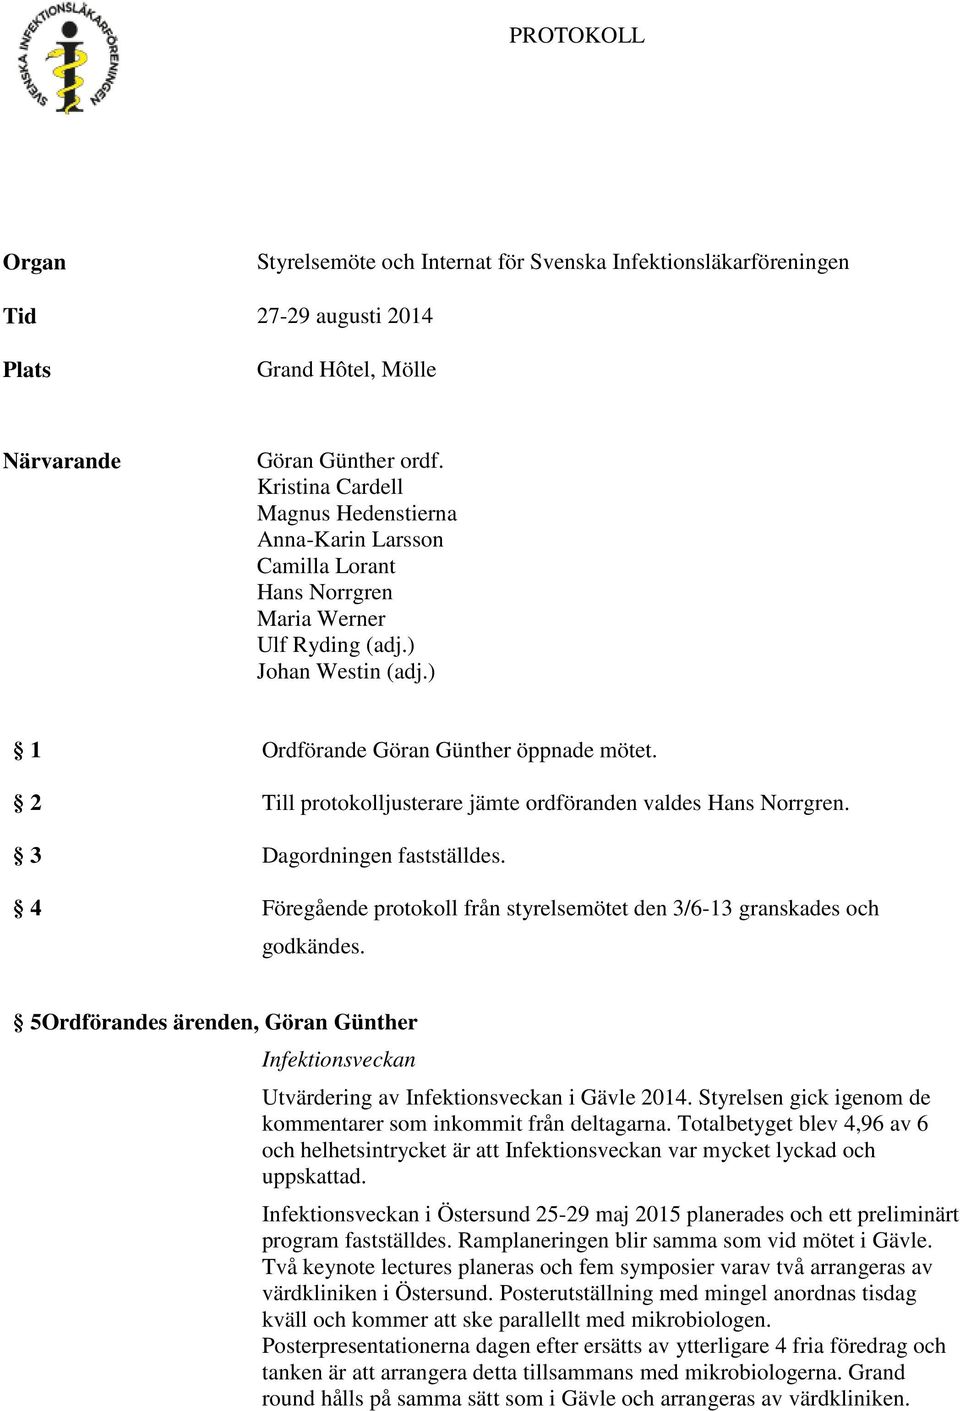 2 Till protokolljusterare jämte ordföranden valdes Hans Norrgren. 3 Dagordningen fastställdes. 4 Föregående protokoll från styrelsemötet den 3/6-13 granskades och godkändes.